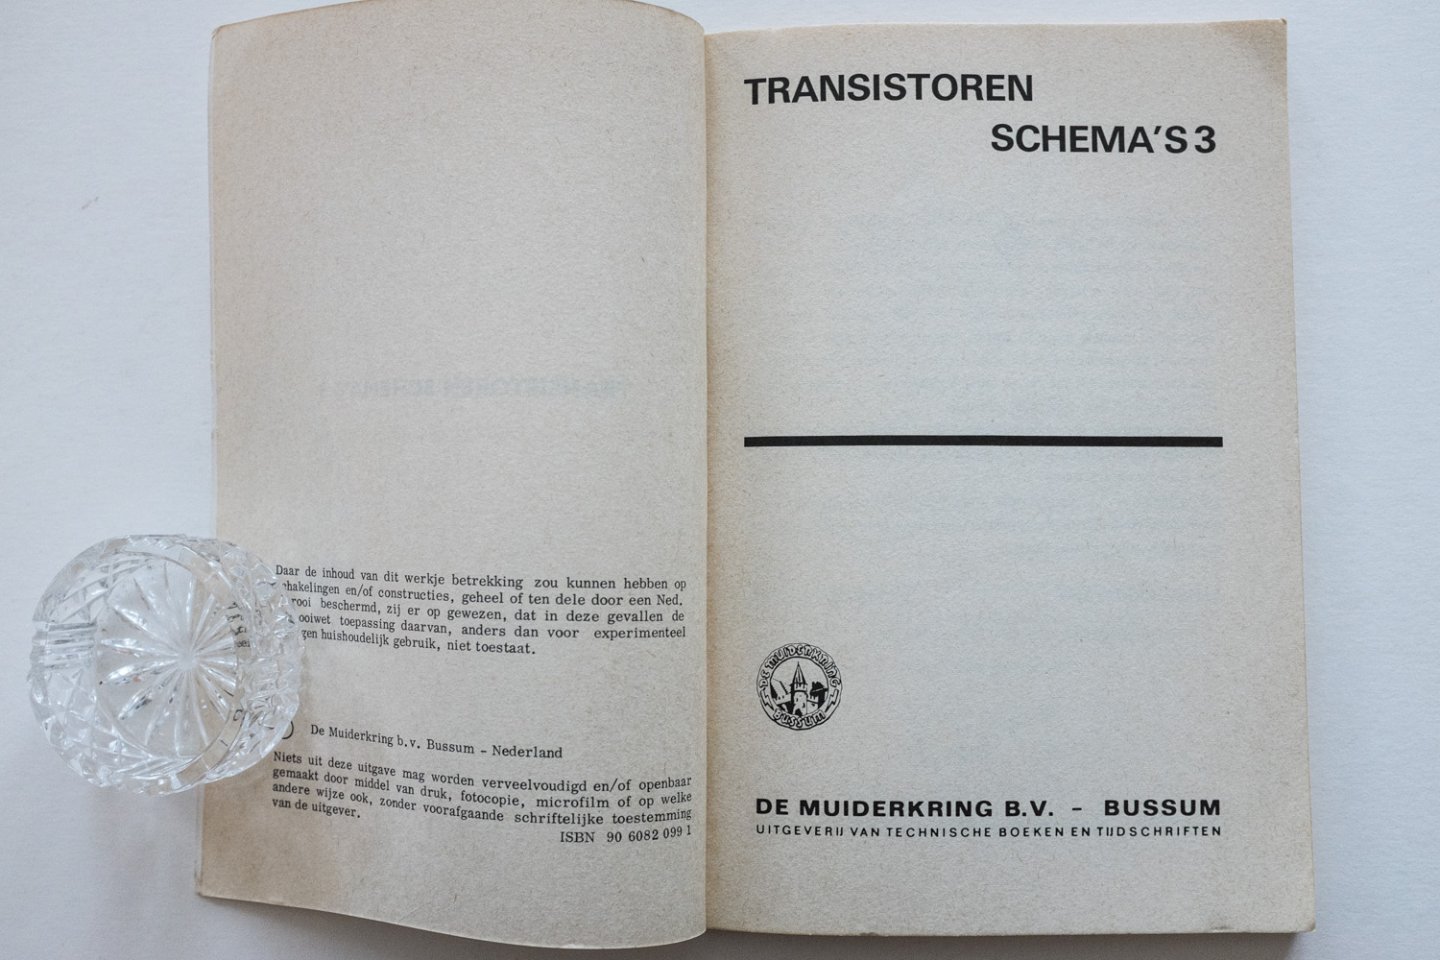  - Transistoren schema's 3